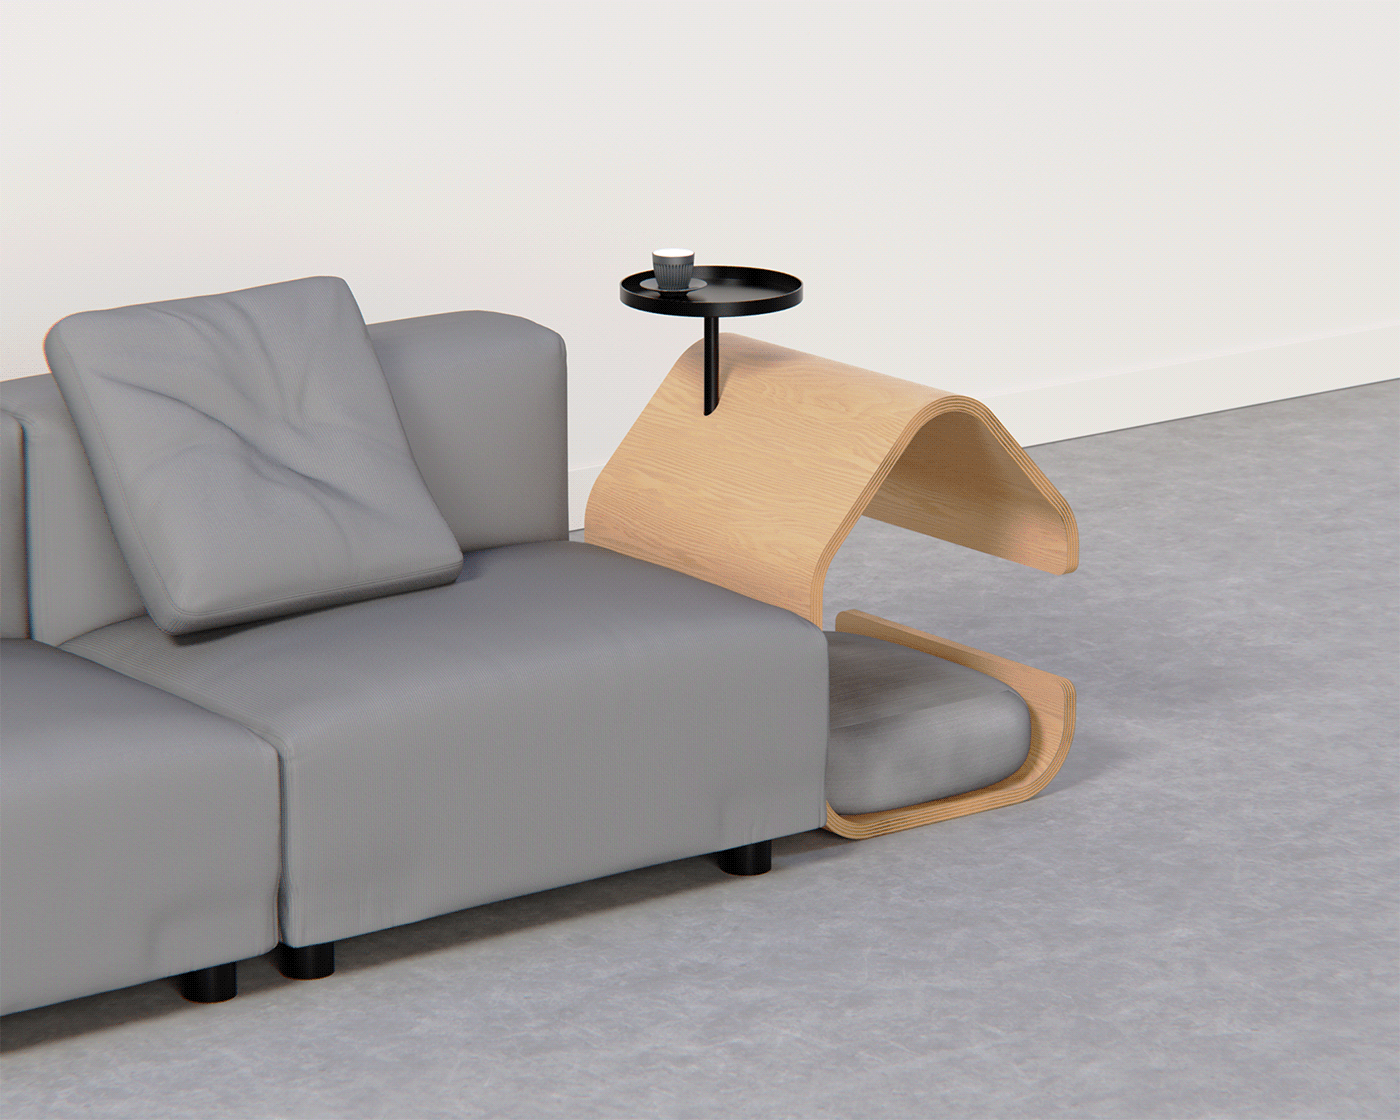 keyshot plywood furniture industrial design  dog Cat living room cad product design  visualization